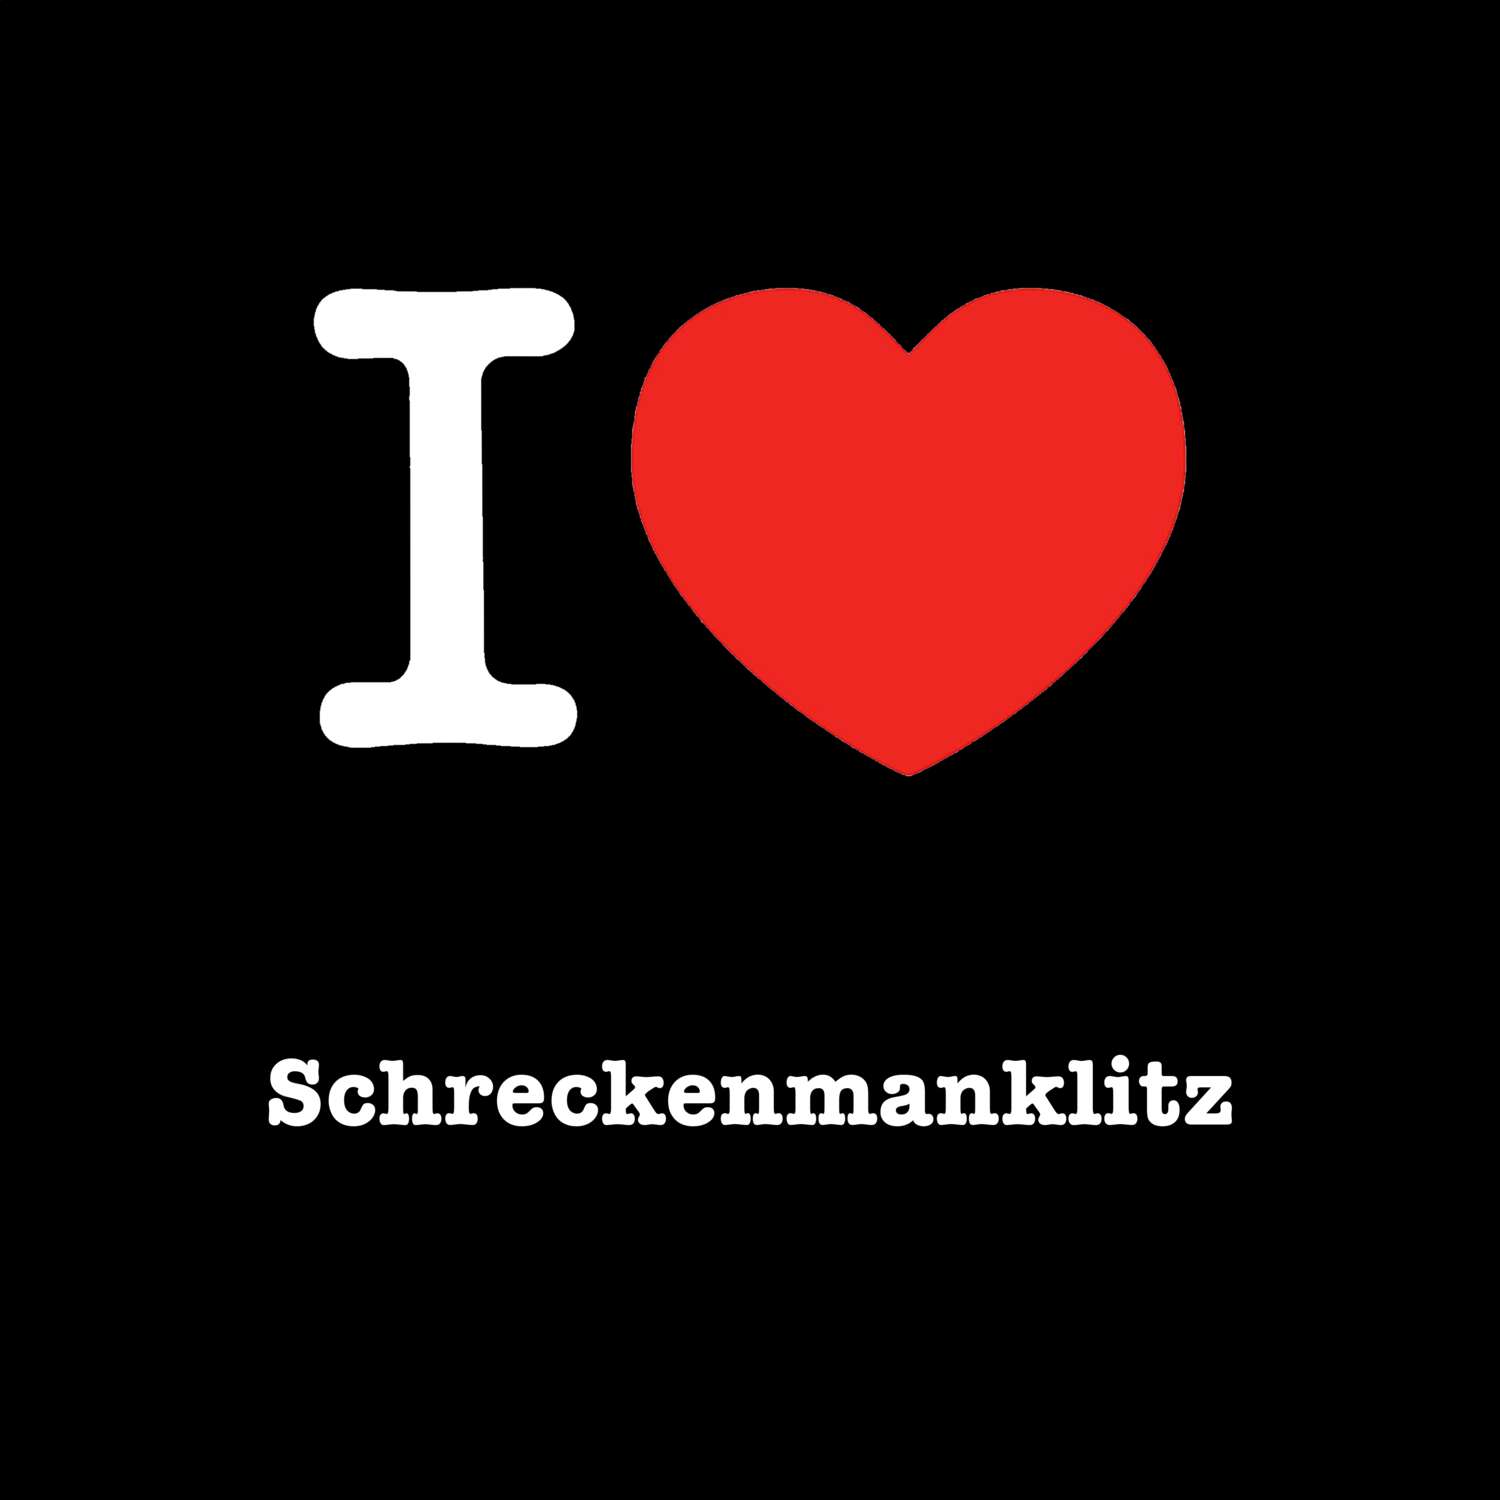 Schreckenmanklitz T-Shirt »I love«